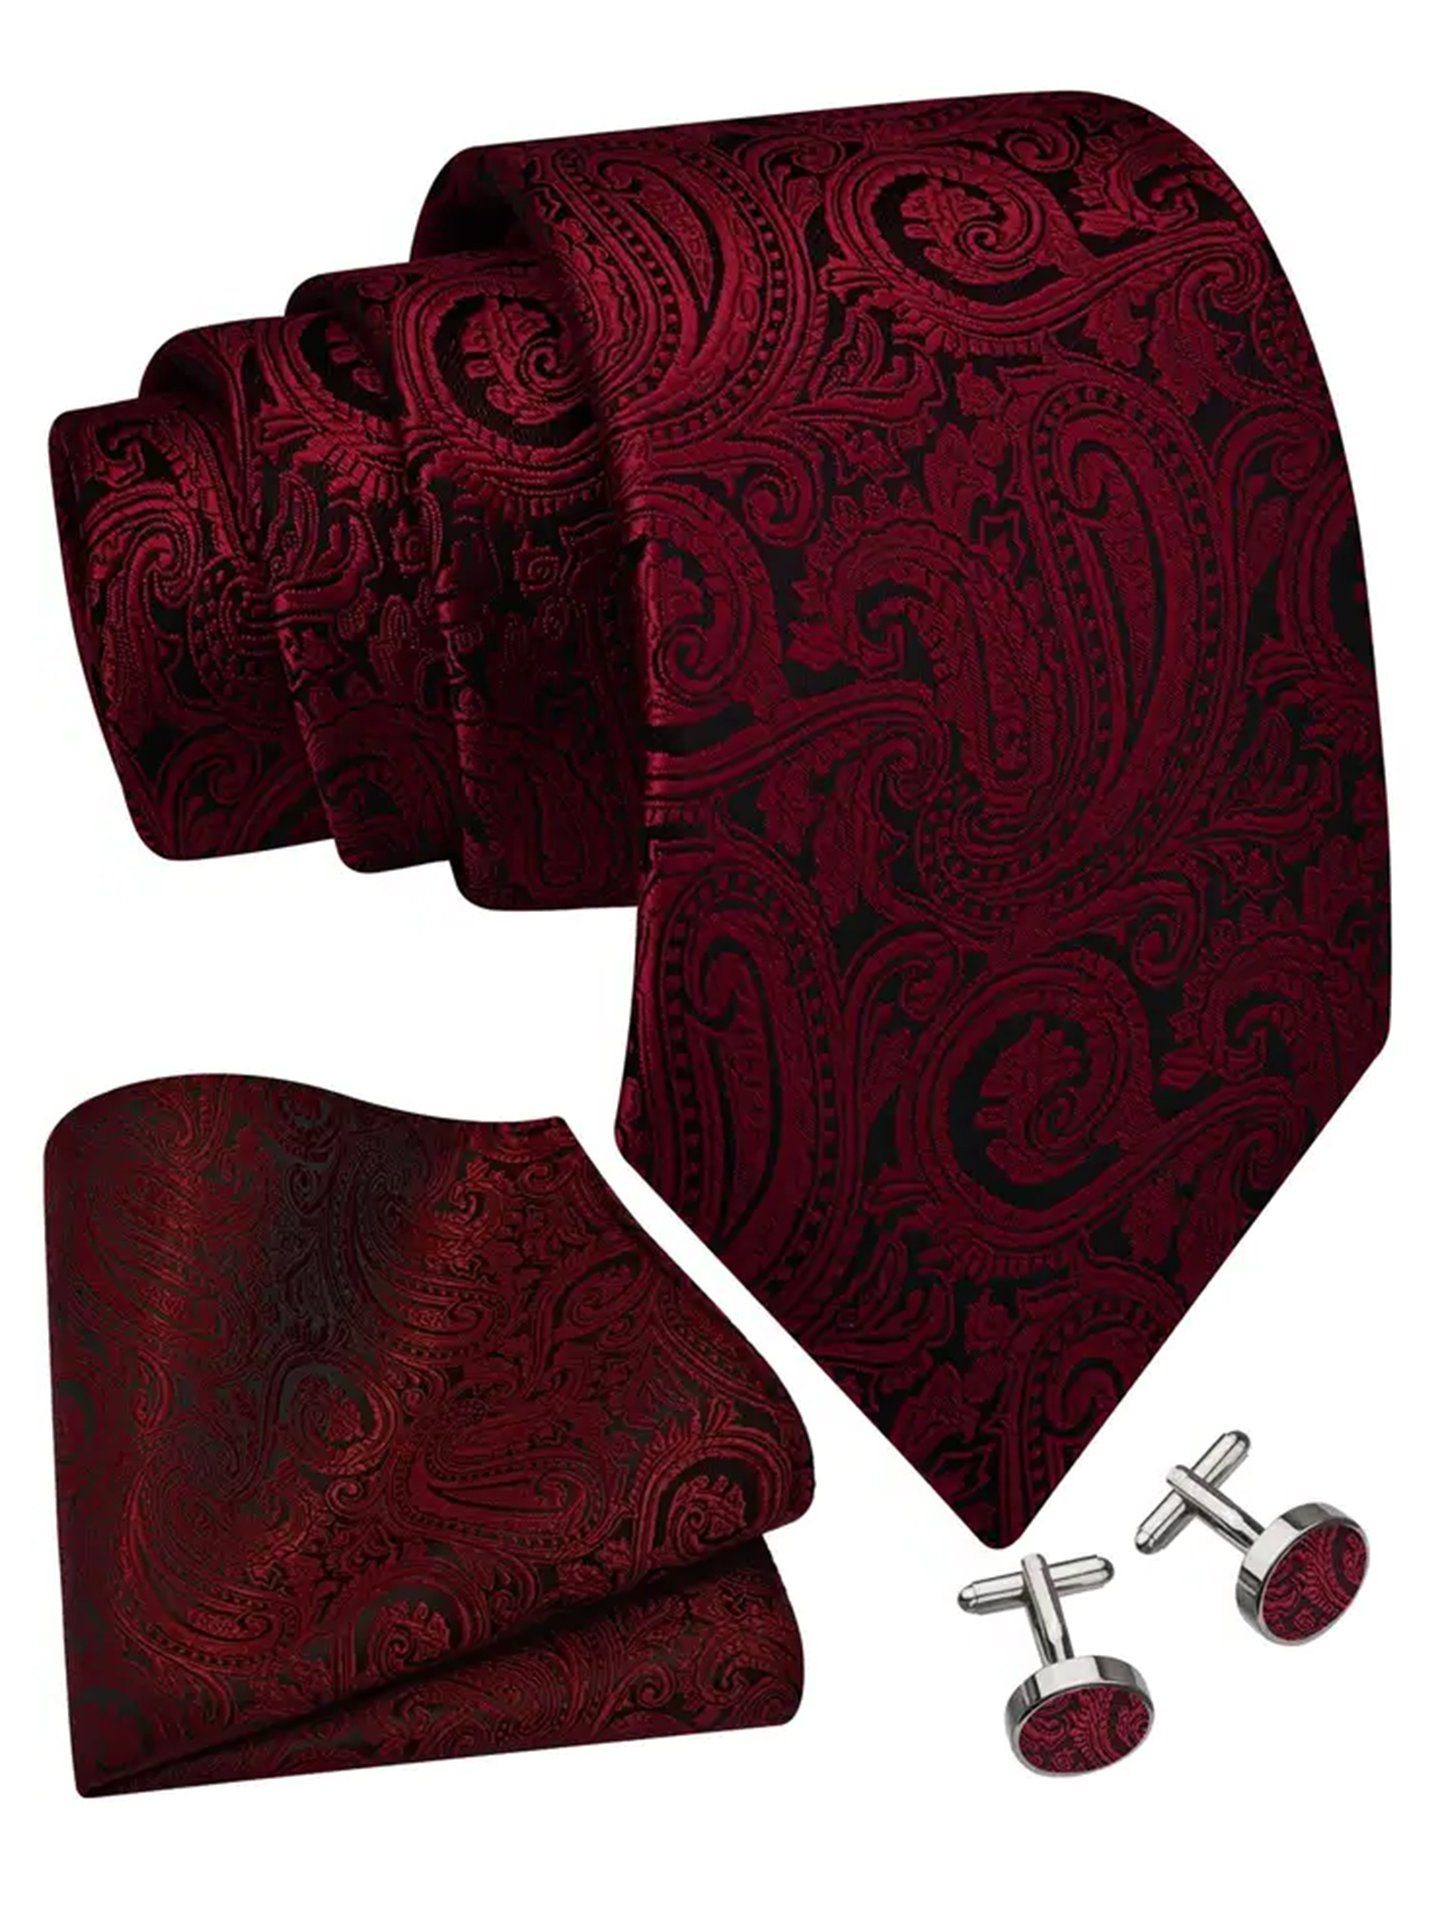 Moschen-Bayern Krawatte Seidenkrawatte Trachtenkrawatte Krawatte Herrenkrawatte Seide Rot Krawatten-Set - Krawatte + Einstecktuch + Manschettenknöpfe | Breite Krawatten